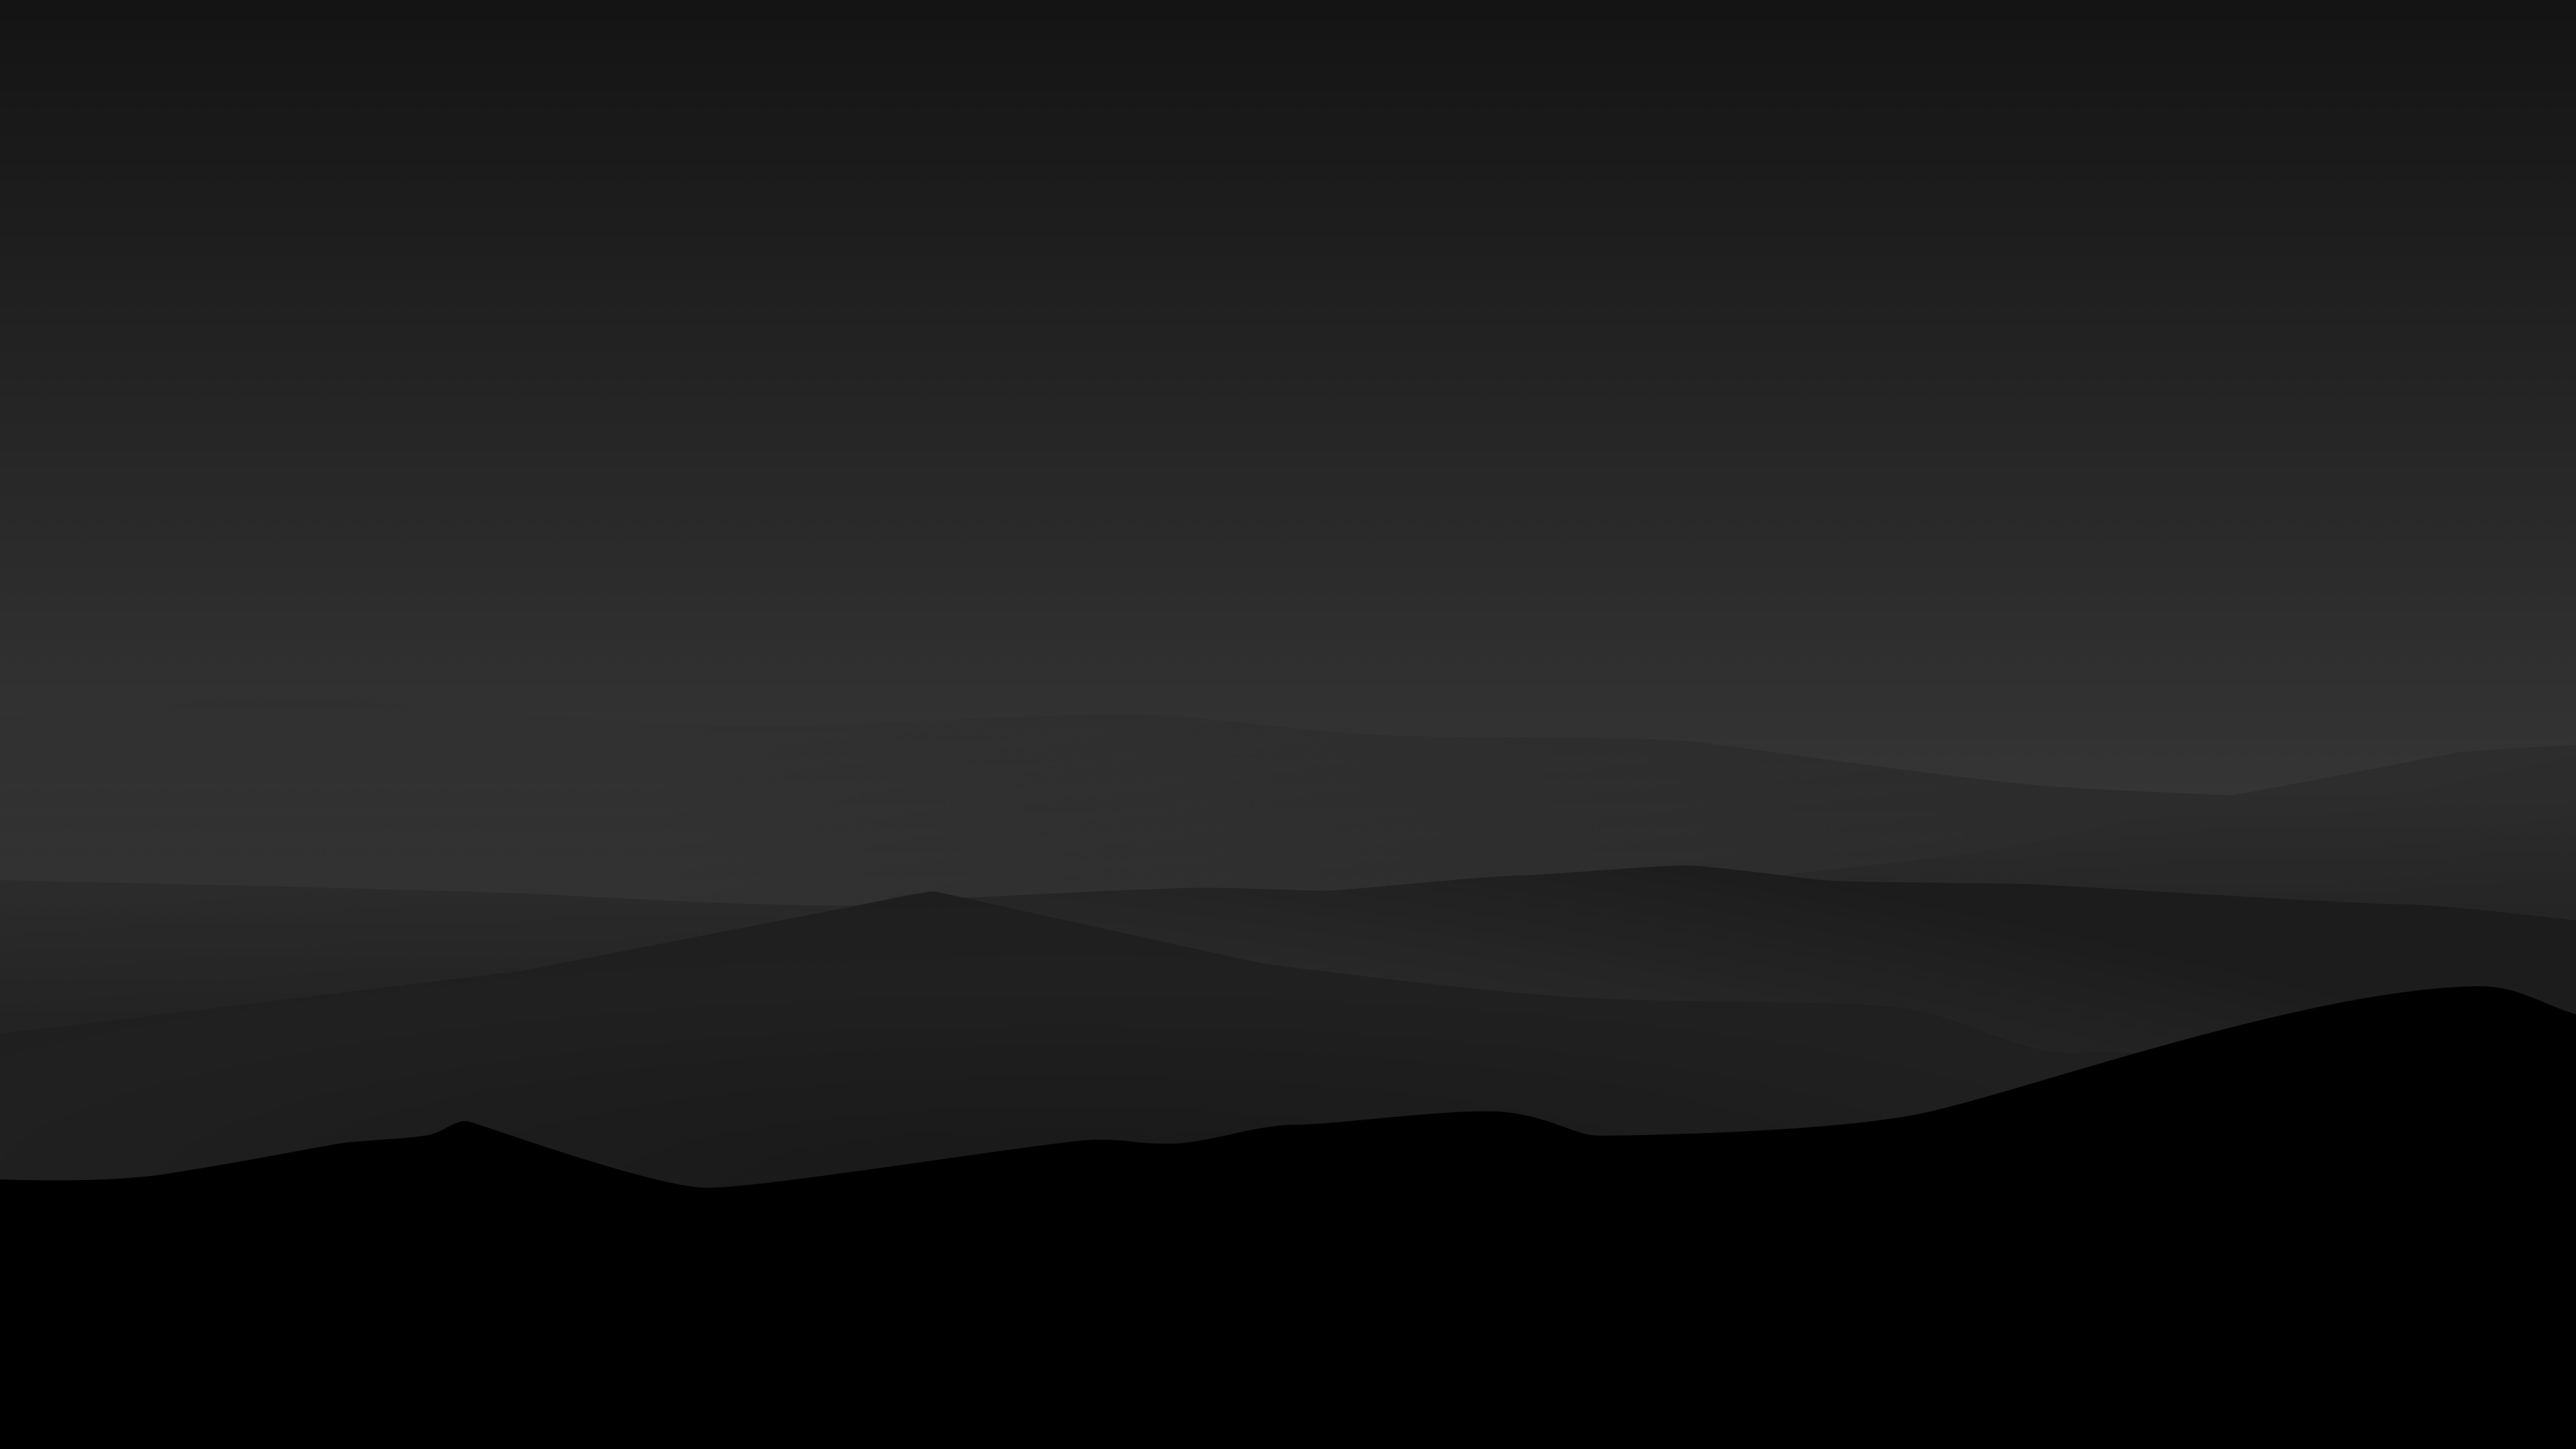 3840X2160 Dark Minimal Mountains At Night 4K Wallpaper, Hd Minimalist